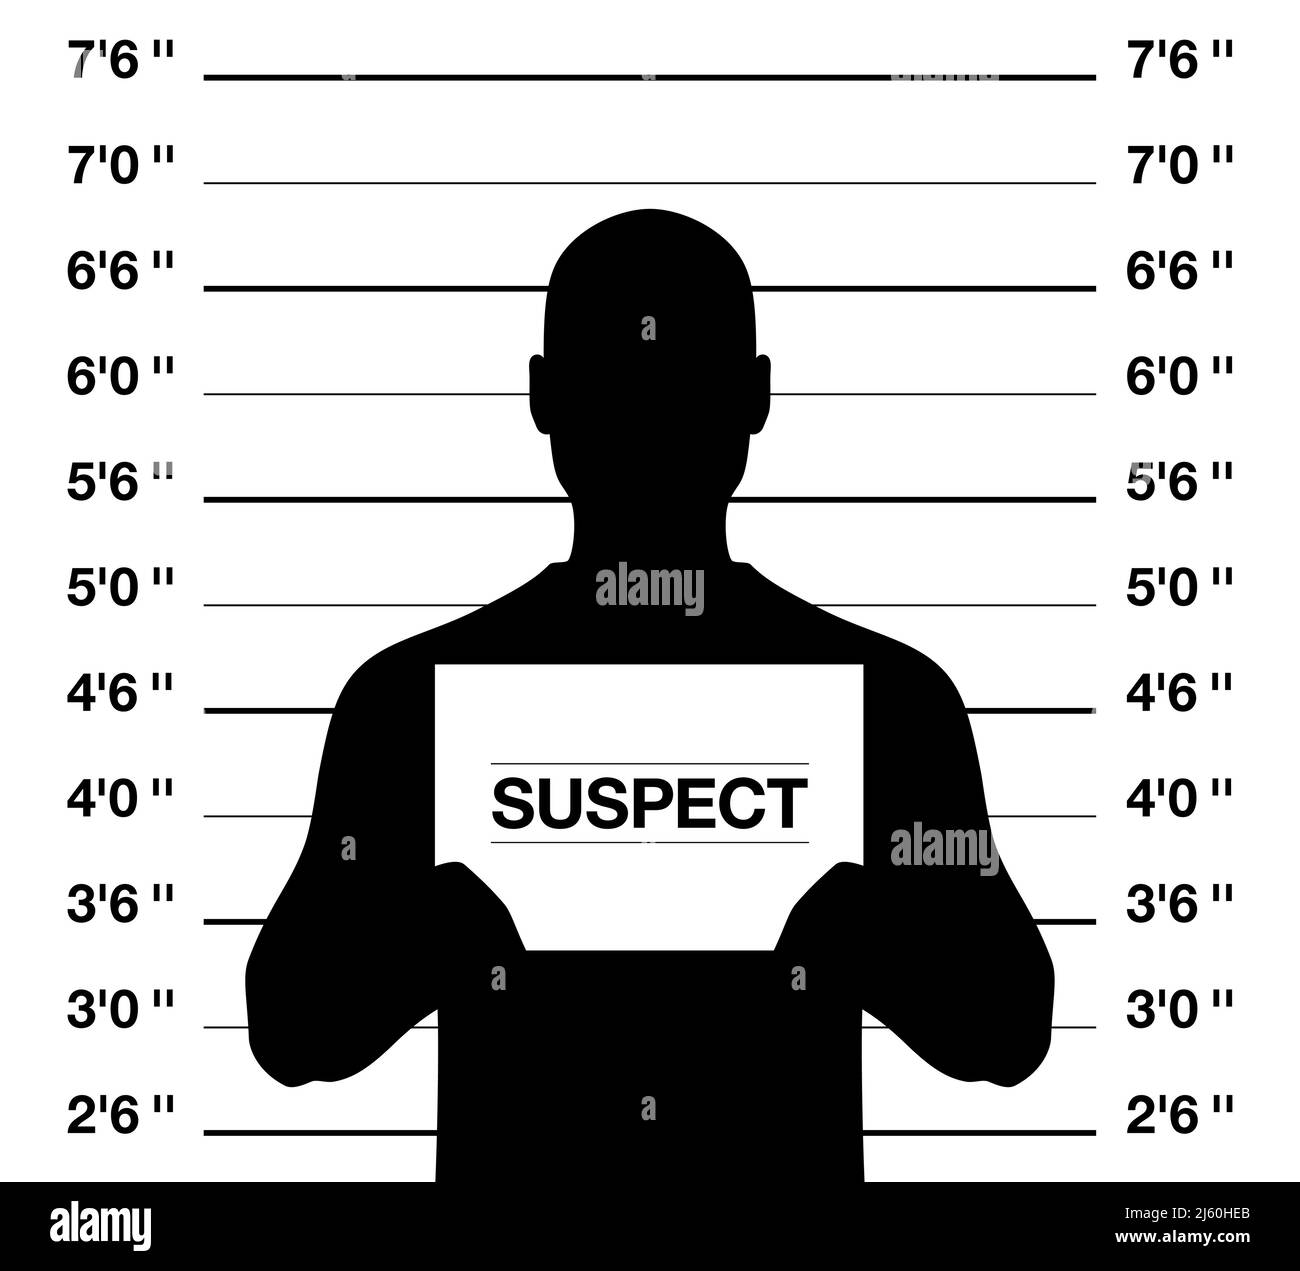 Männliche verdächtige Mugshot, Vektordarstellung. Anonymus-Mann, der auf einem kriminellen Foto-Shooting Hintergrund steht. Stock Vektor